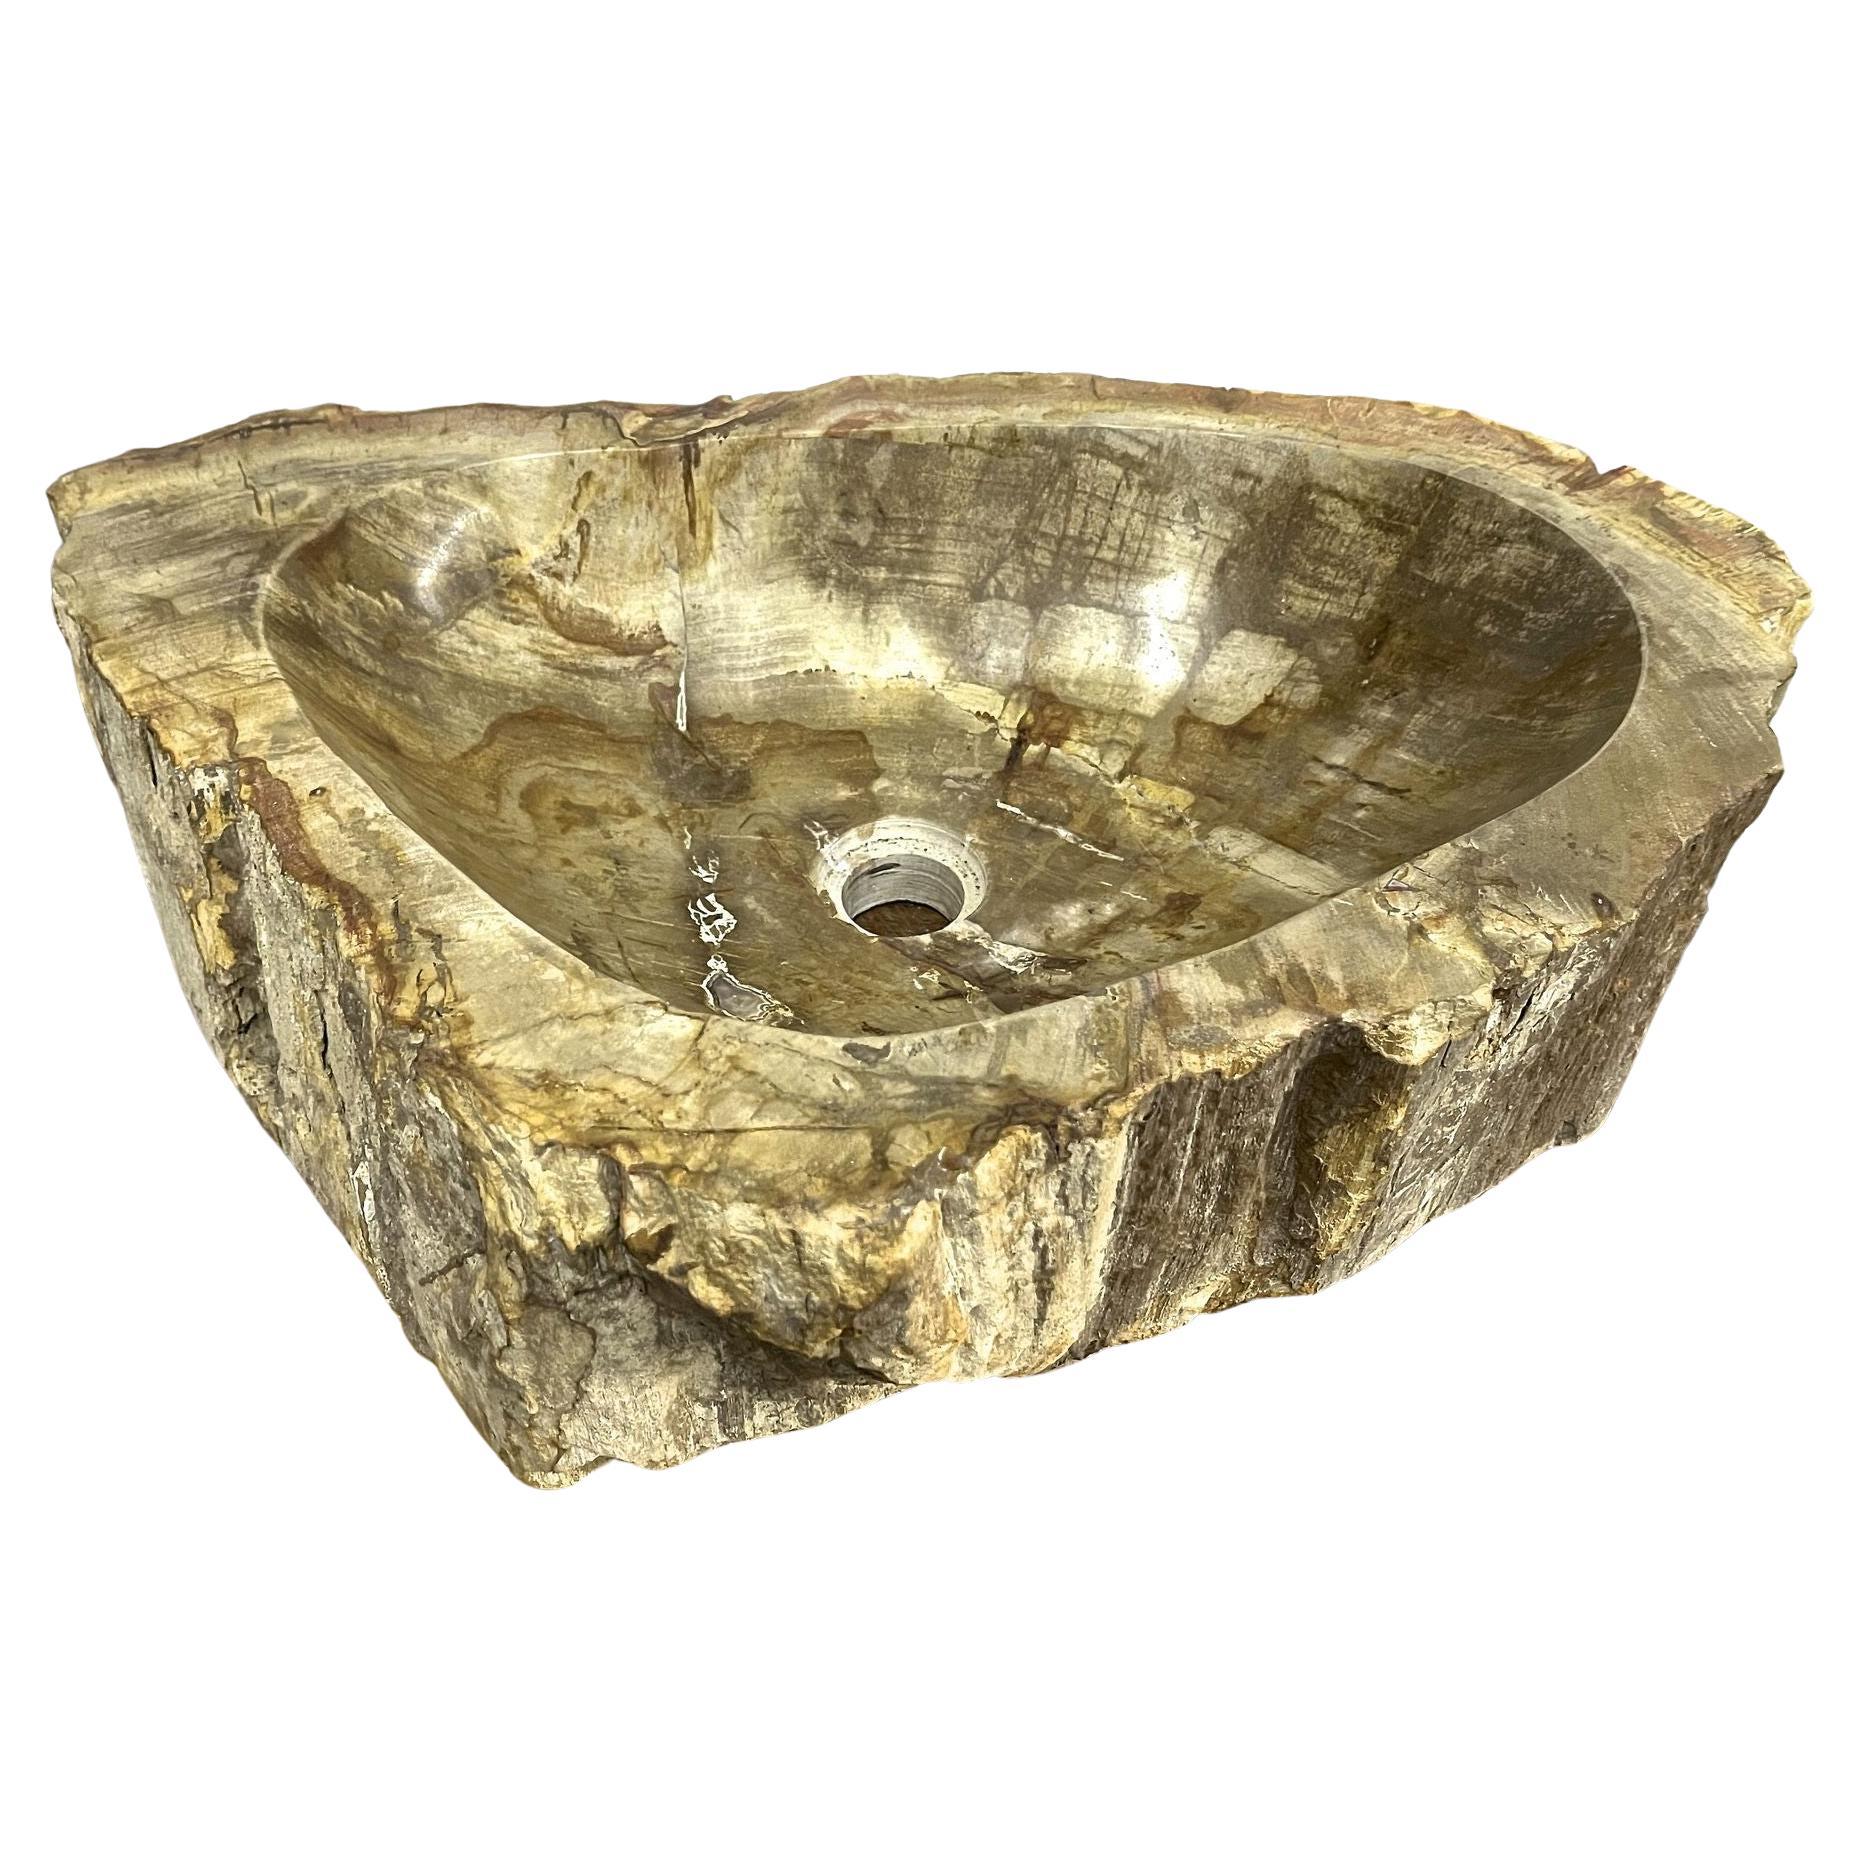 Petrified Wood Sink in Beige/ Gelb/ Brauntönen poliert, Top-Qualität